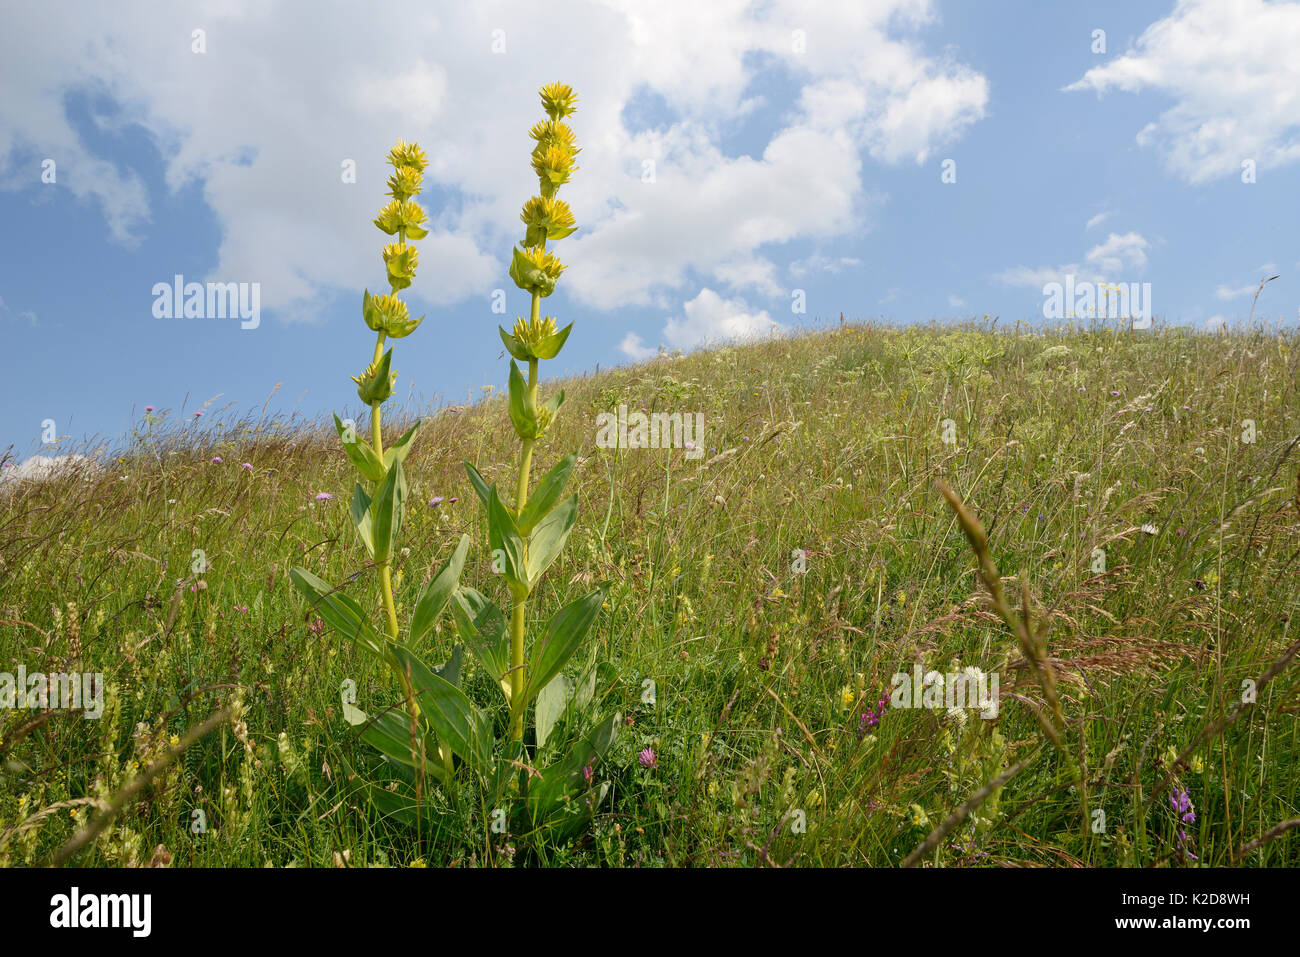 Grande Gentiane jaune (Gentiana lutea ssp. Tanacetum) pics de floraison sur Piva plateau, près de Trsa, Monténégro, juillet. Banque D'Images